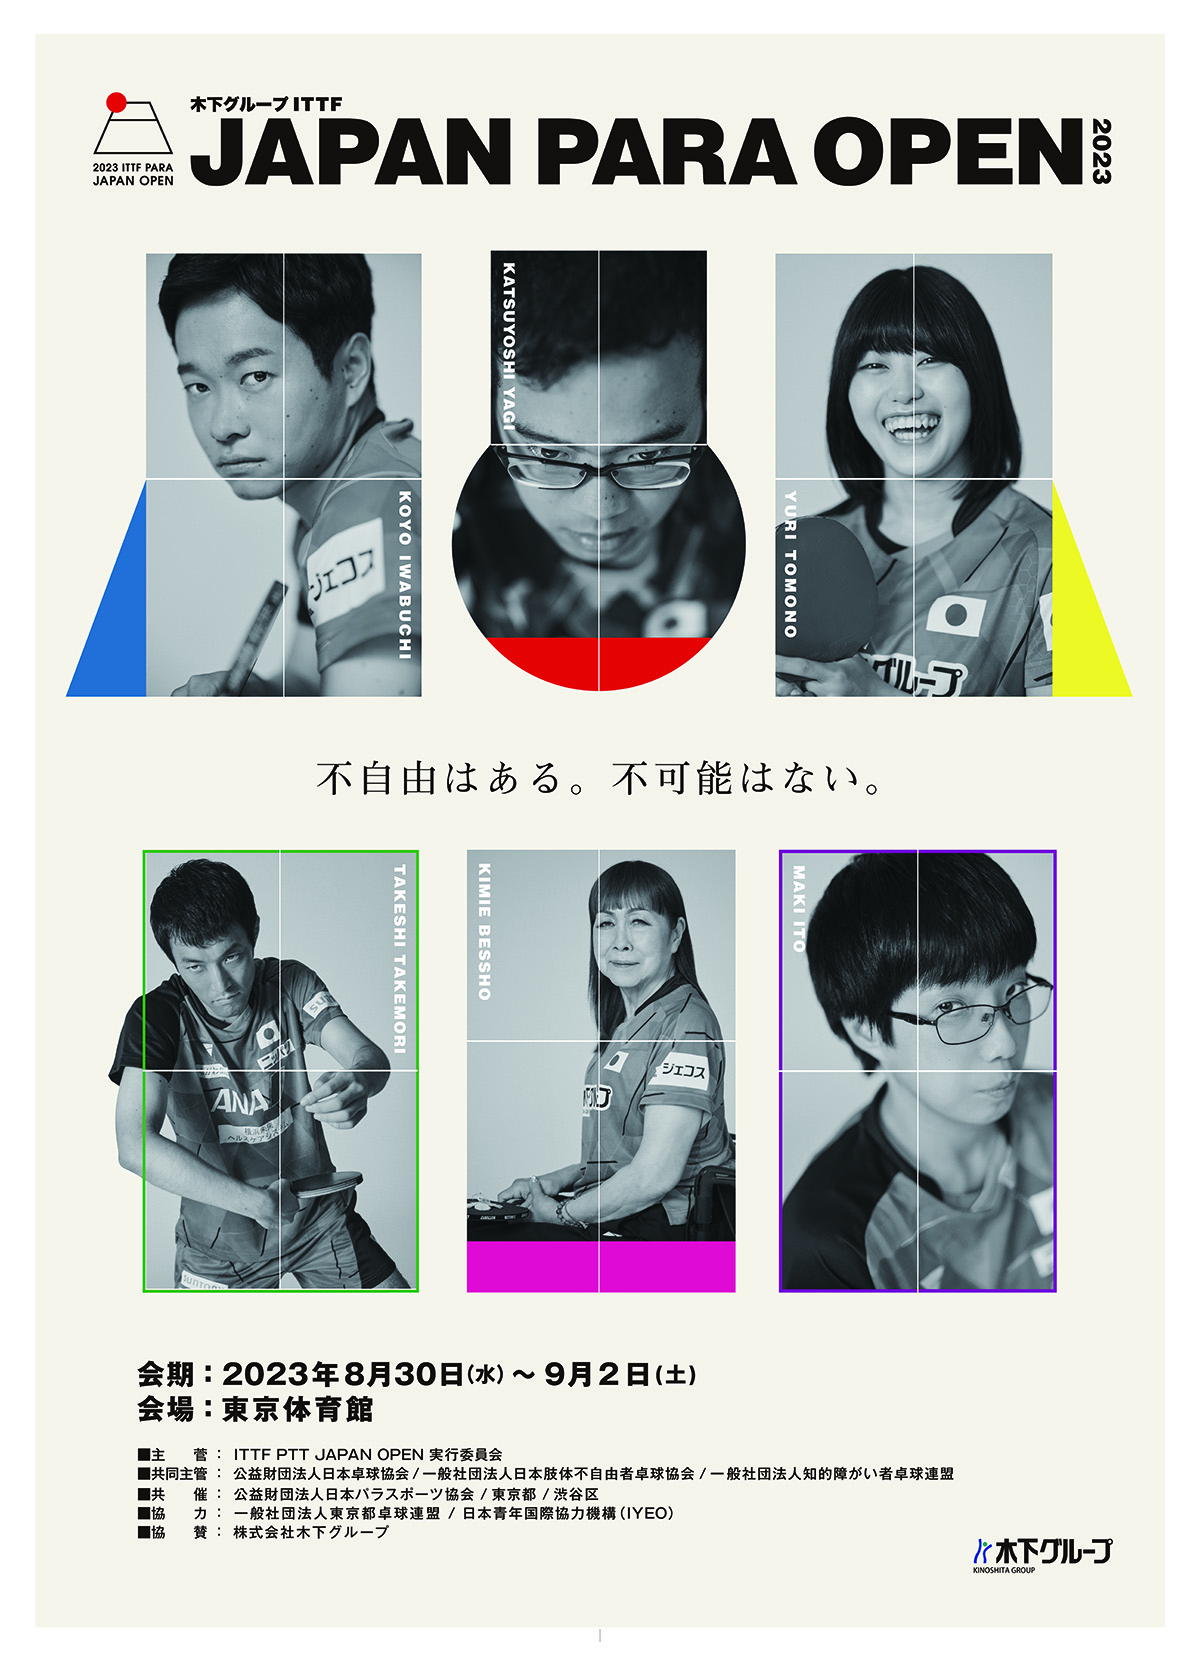 来週開幕！KINOSHITA GROUP ITTF Japan Para Open 2023 出場者公開！